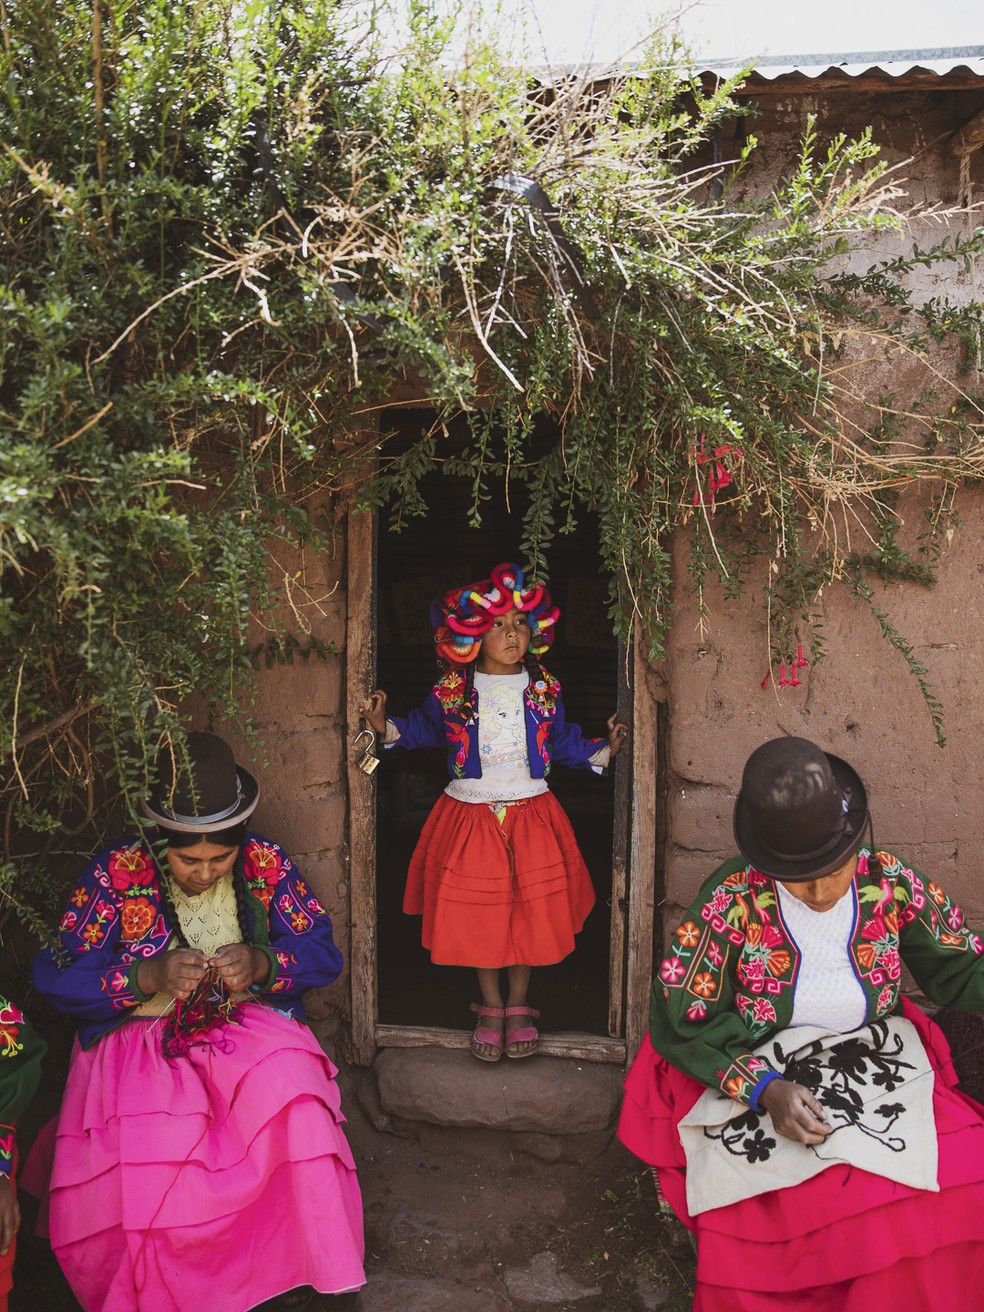 Delas, elas: por gerações, as mulheres de Taquile, vizinhas dos Uros, levam a cultura ancestral feminina de bordados e artesanatos com significados Incas  — Foto: Acervo pessoal